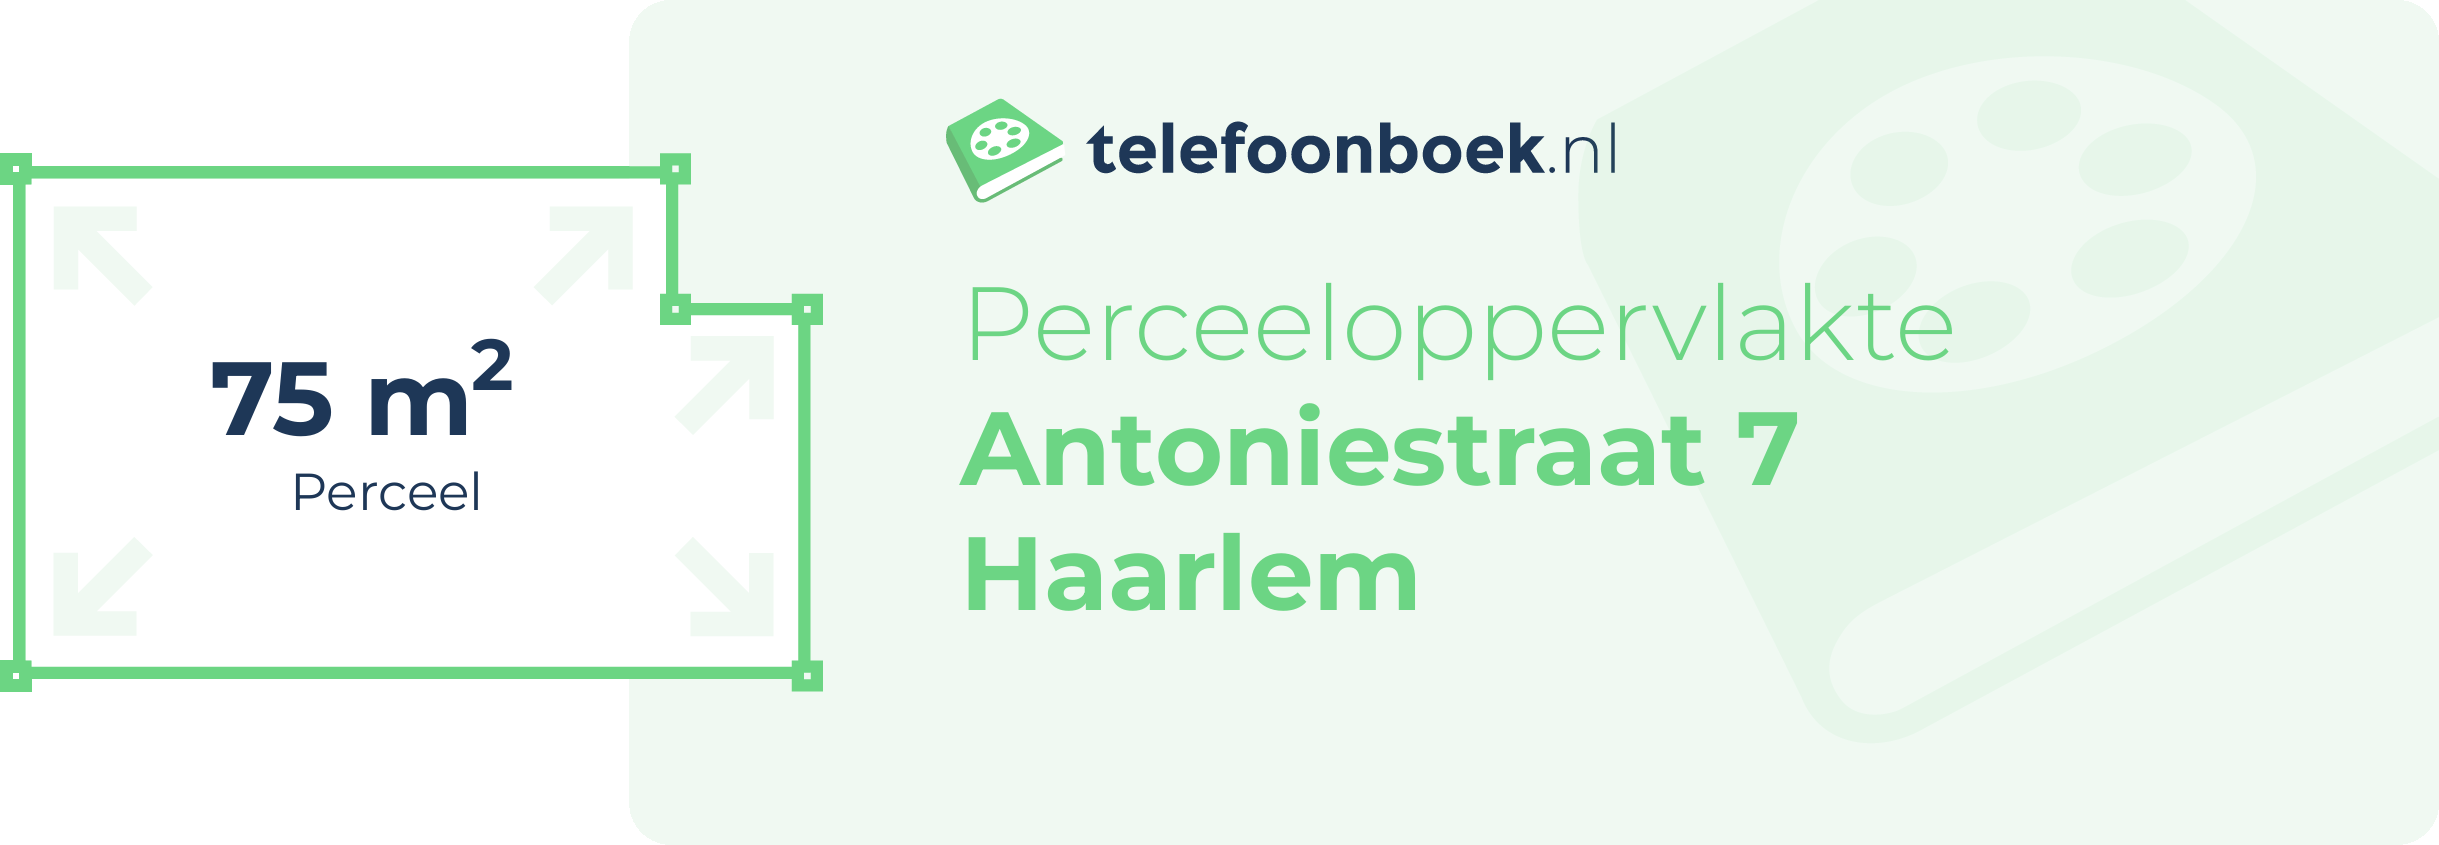 Perceeloppervlakte Antoniestraat 7 Haarlem